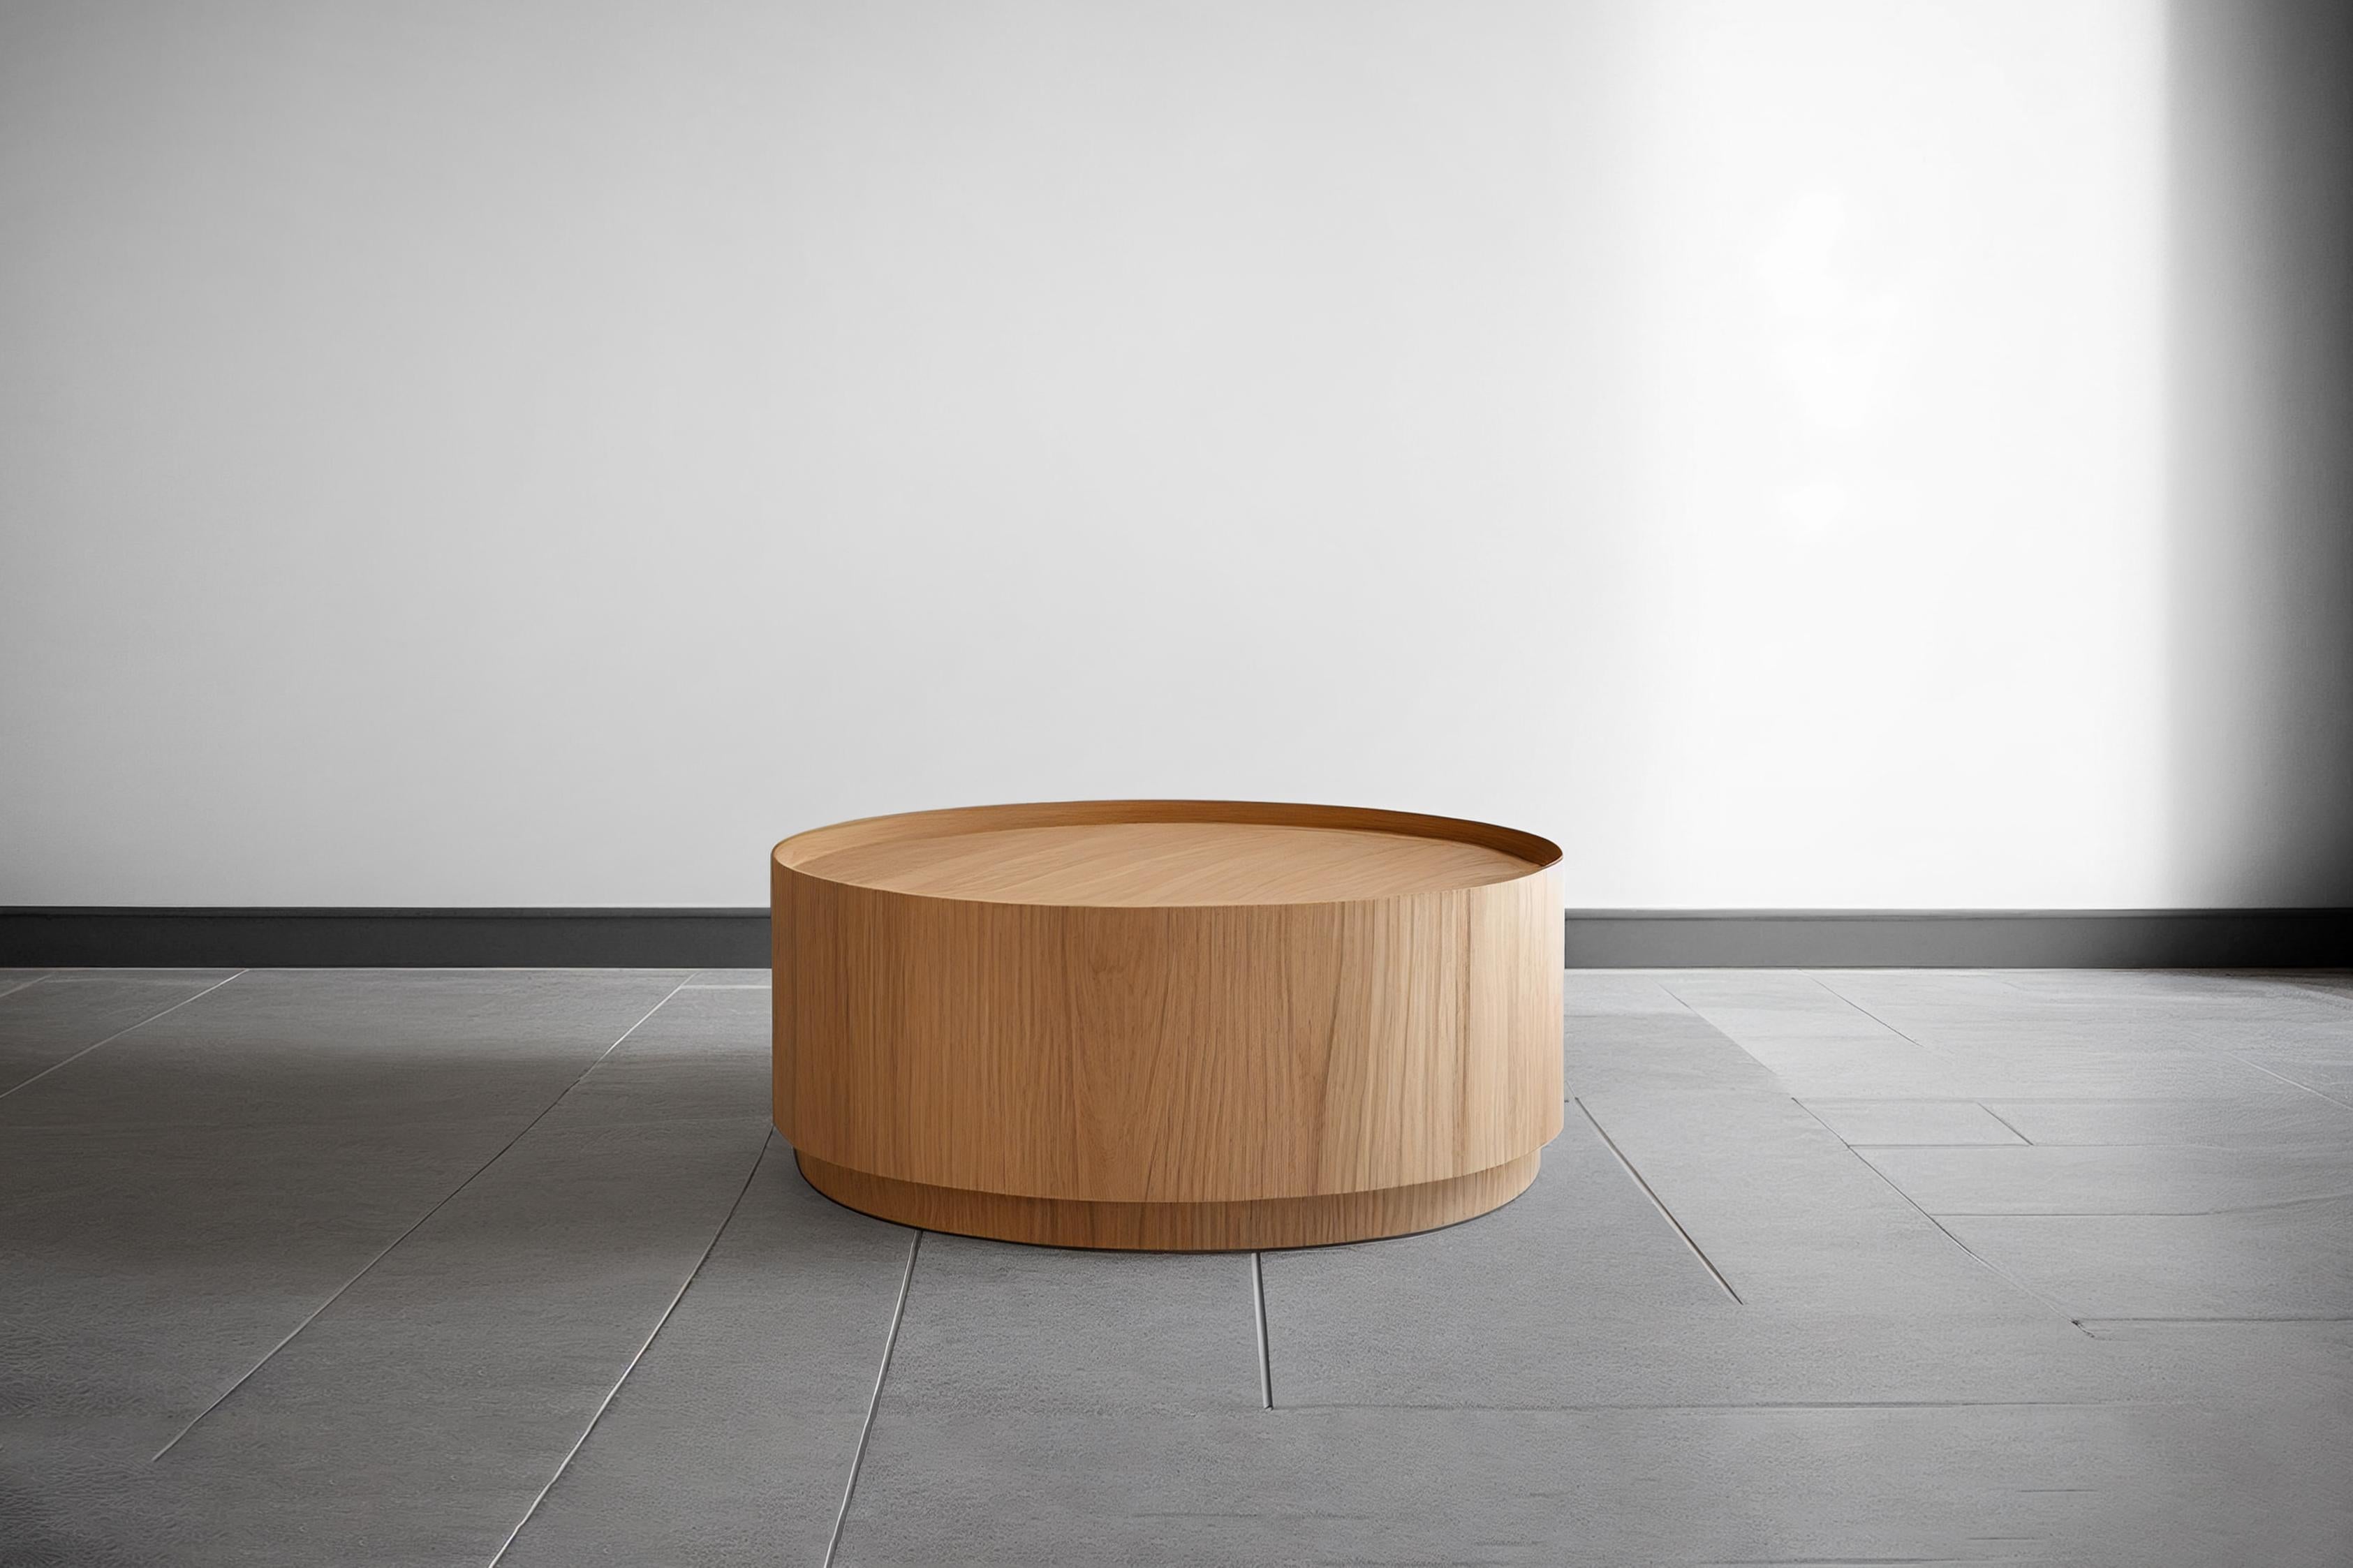 Une table basse brutaliste fabriquée en mdf de qualité supérieure avec une belle finition en placage de bois. 
Toutes les pièces sont recouvertes d'une finition semi-mate en polyuréthane. 

La solidité de la construction et le savoir-faire